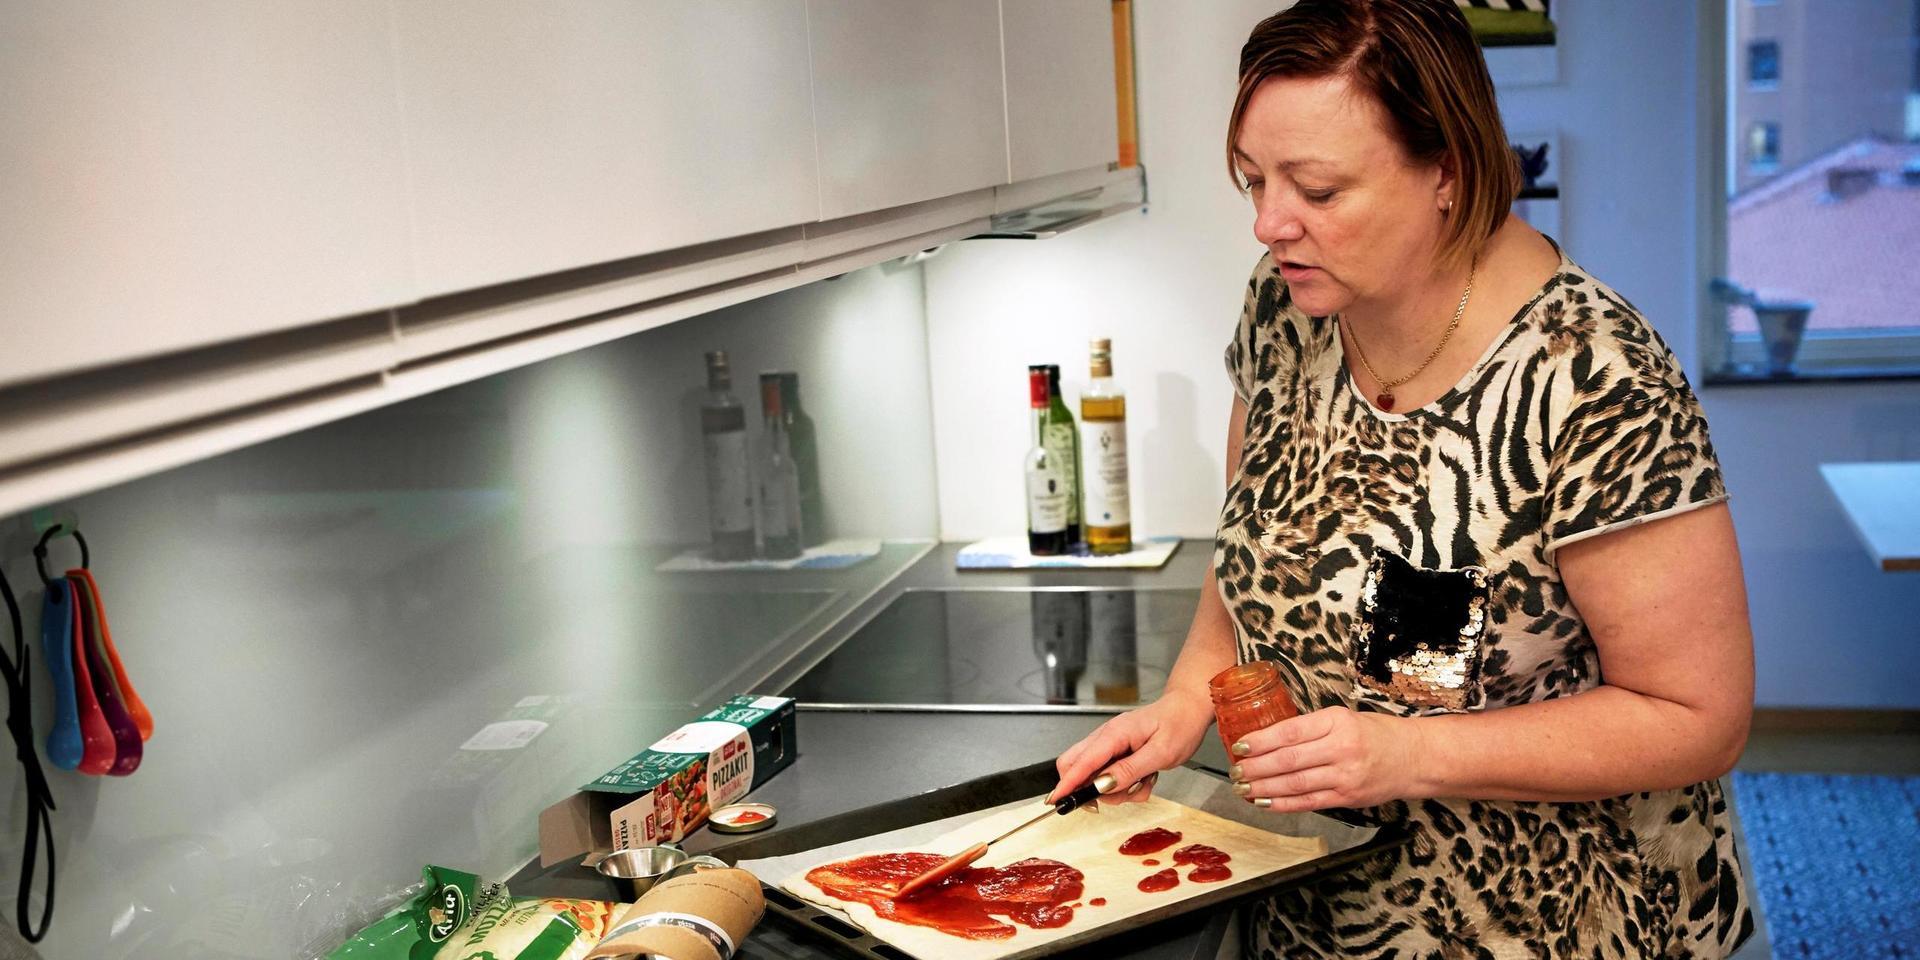 Gabriella Mohoff bakar pizza enligt instruktionerna när konsumentredaktionen testar pizzakit.